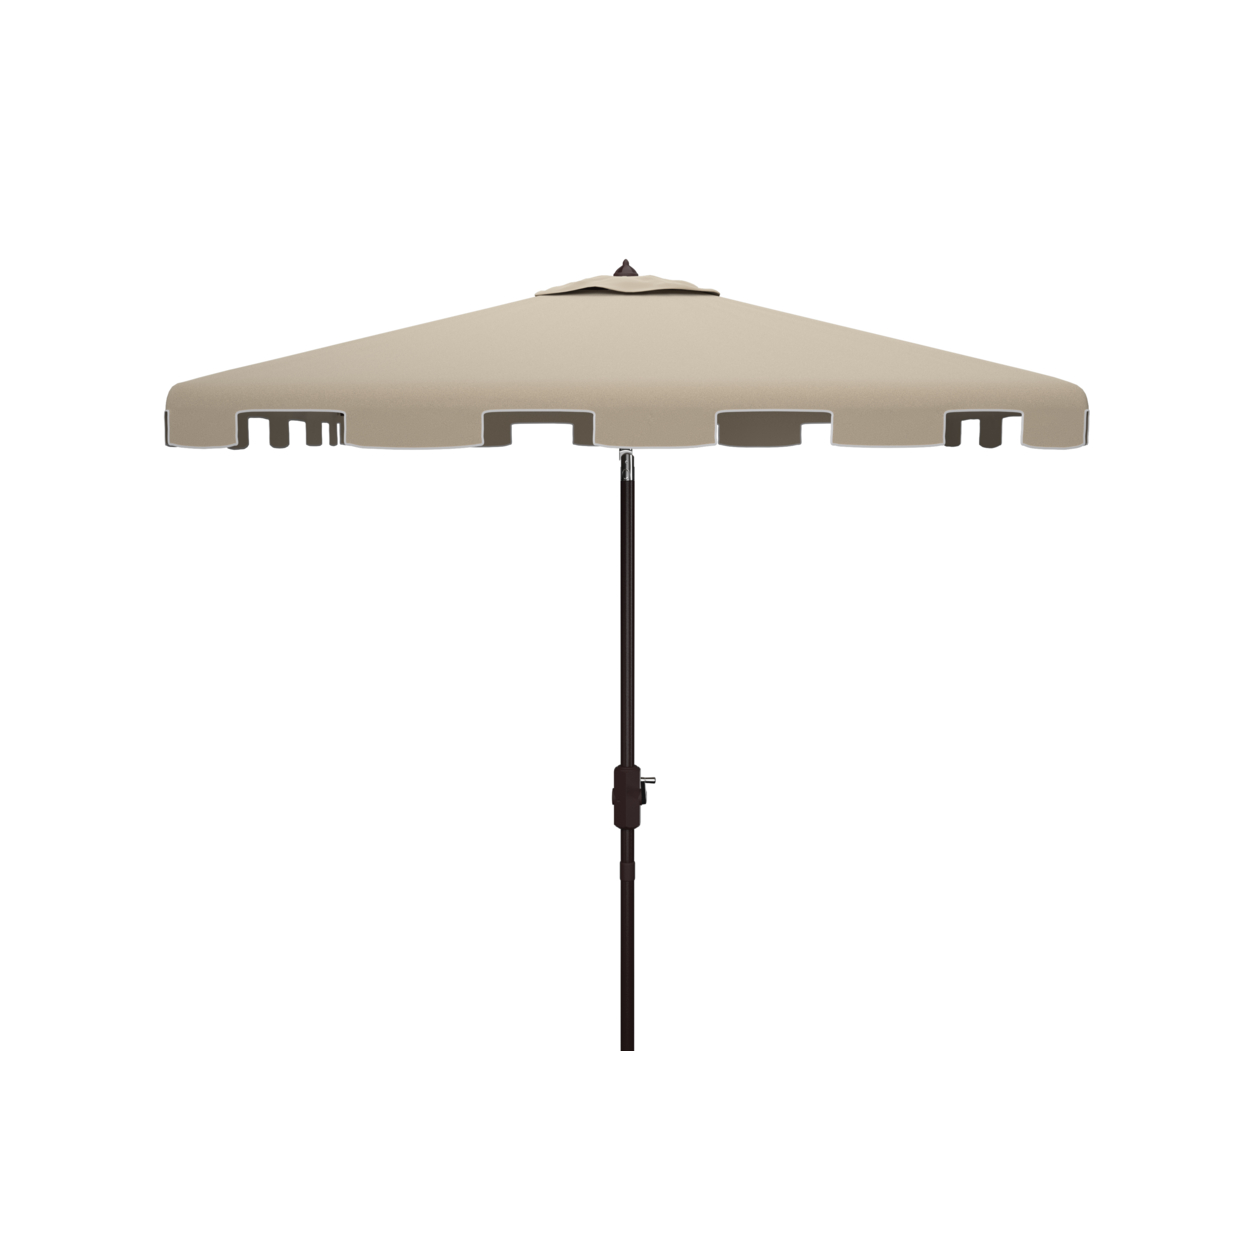 SAFAVIEH Outdoor Collection Zimmerman 7.5-Foot Square Market Umbrella Beige/White